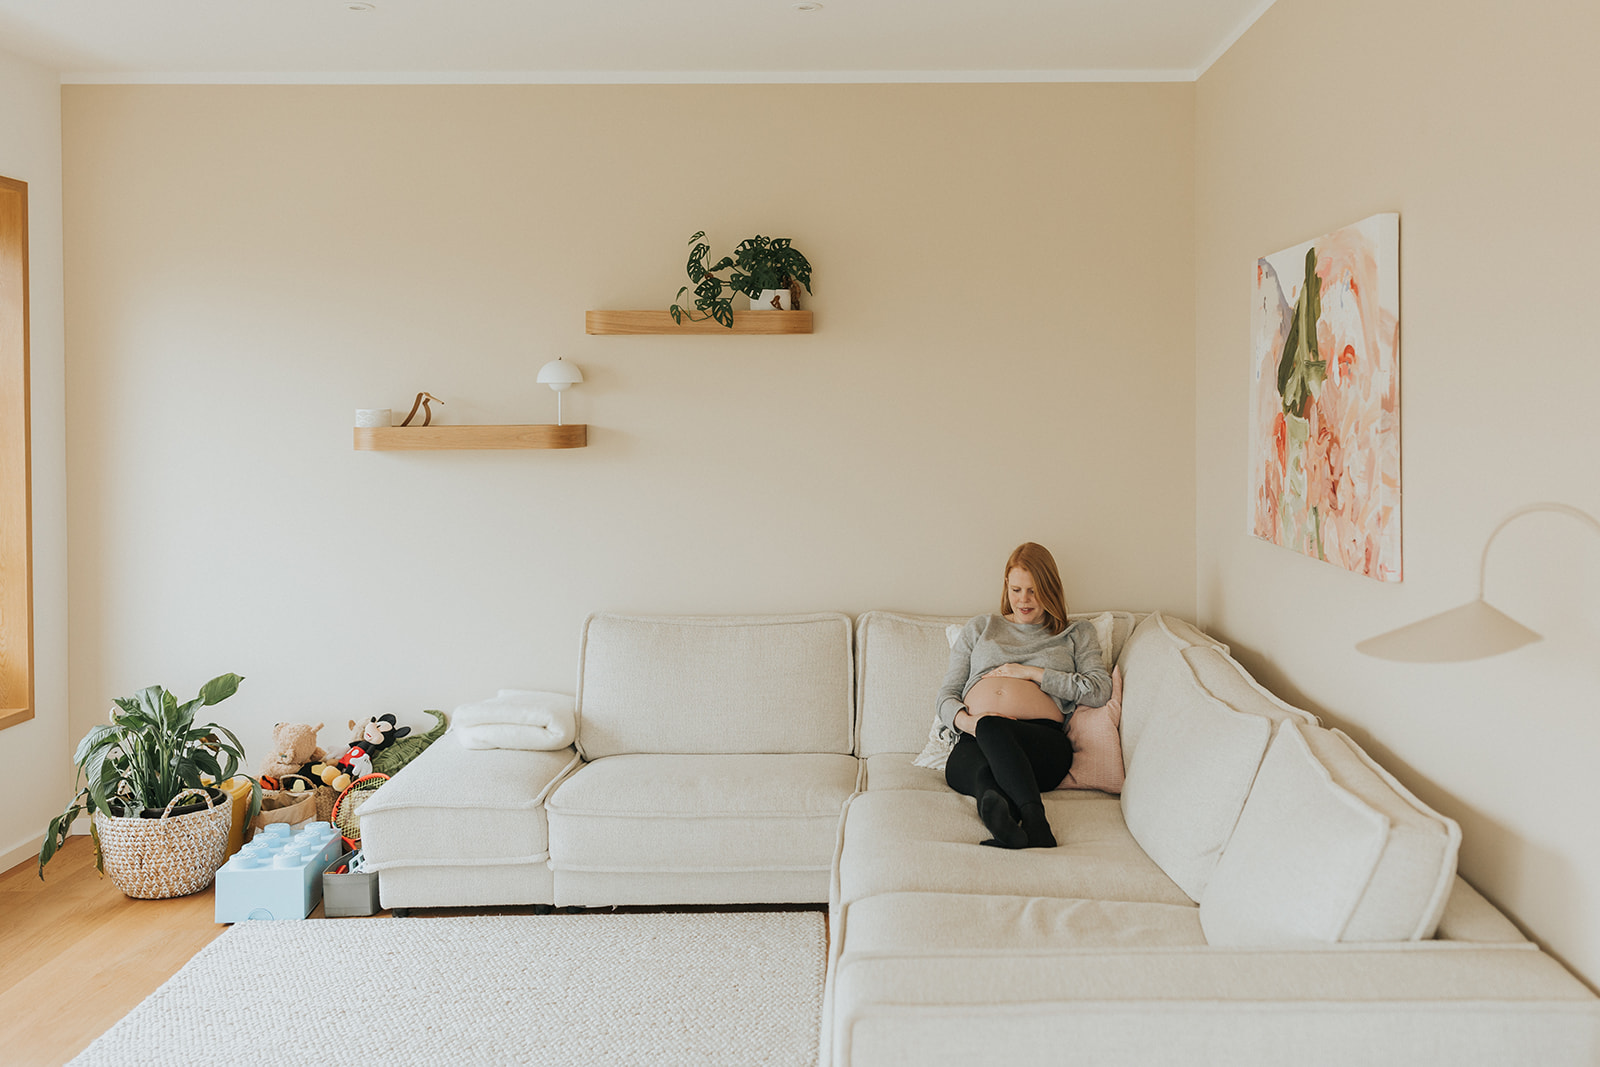 Schwangerschaftsbilder im eigenen zuhause